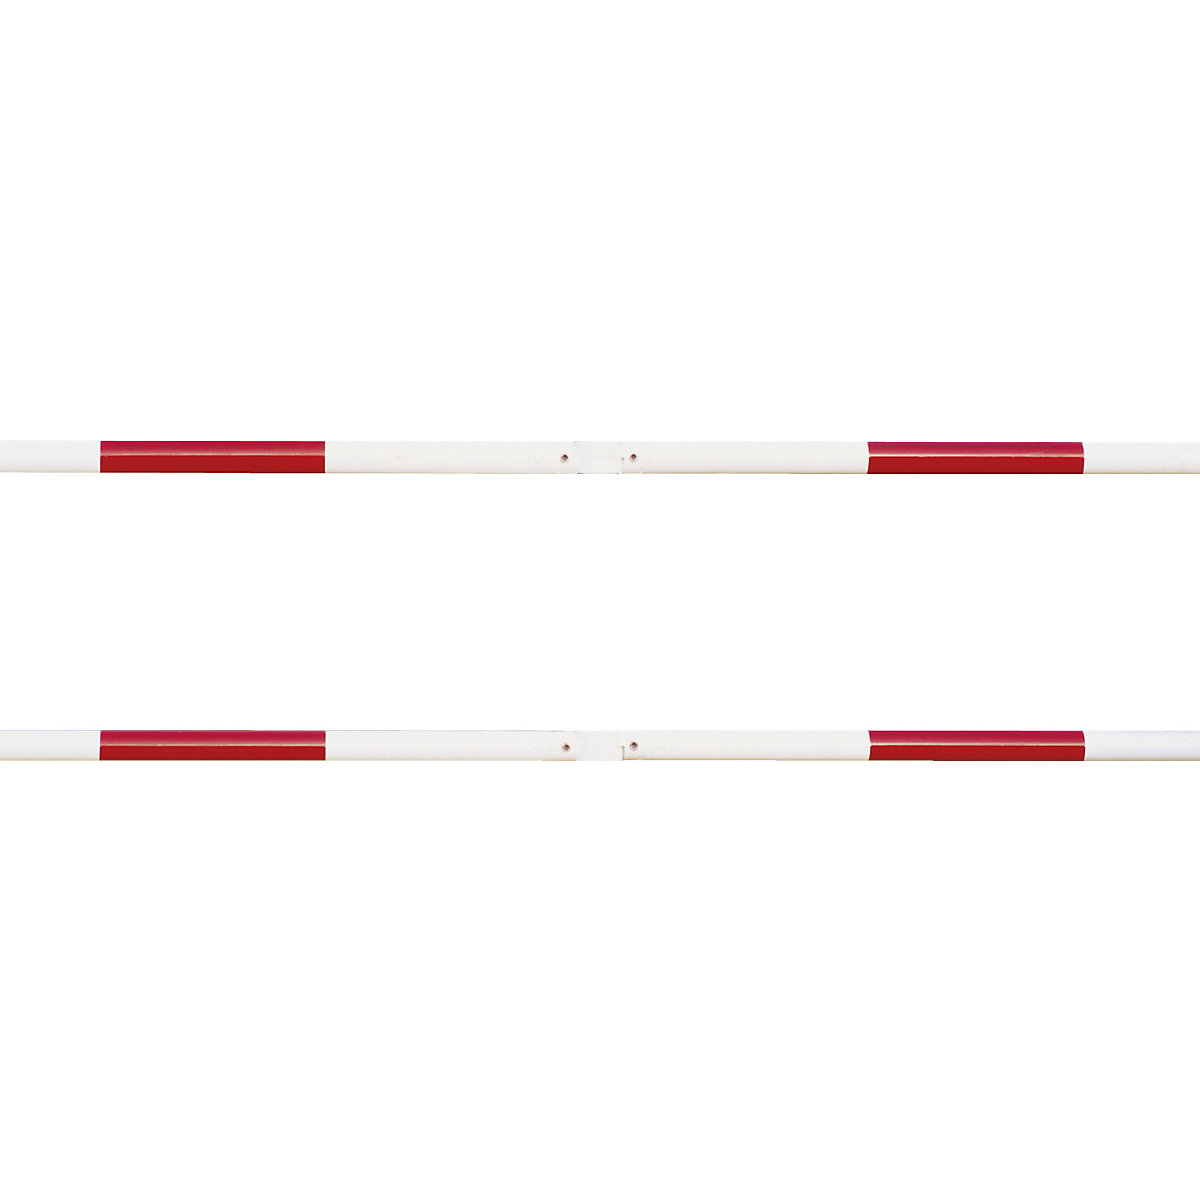 Balustradesysteem, dwarsbuis-Ø 48 mm, rood / wit, lengte 1000 mm